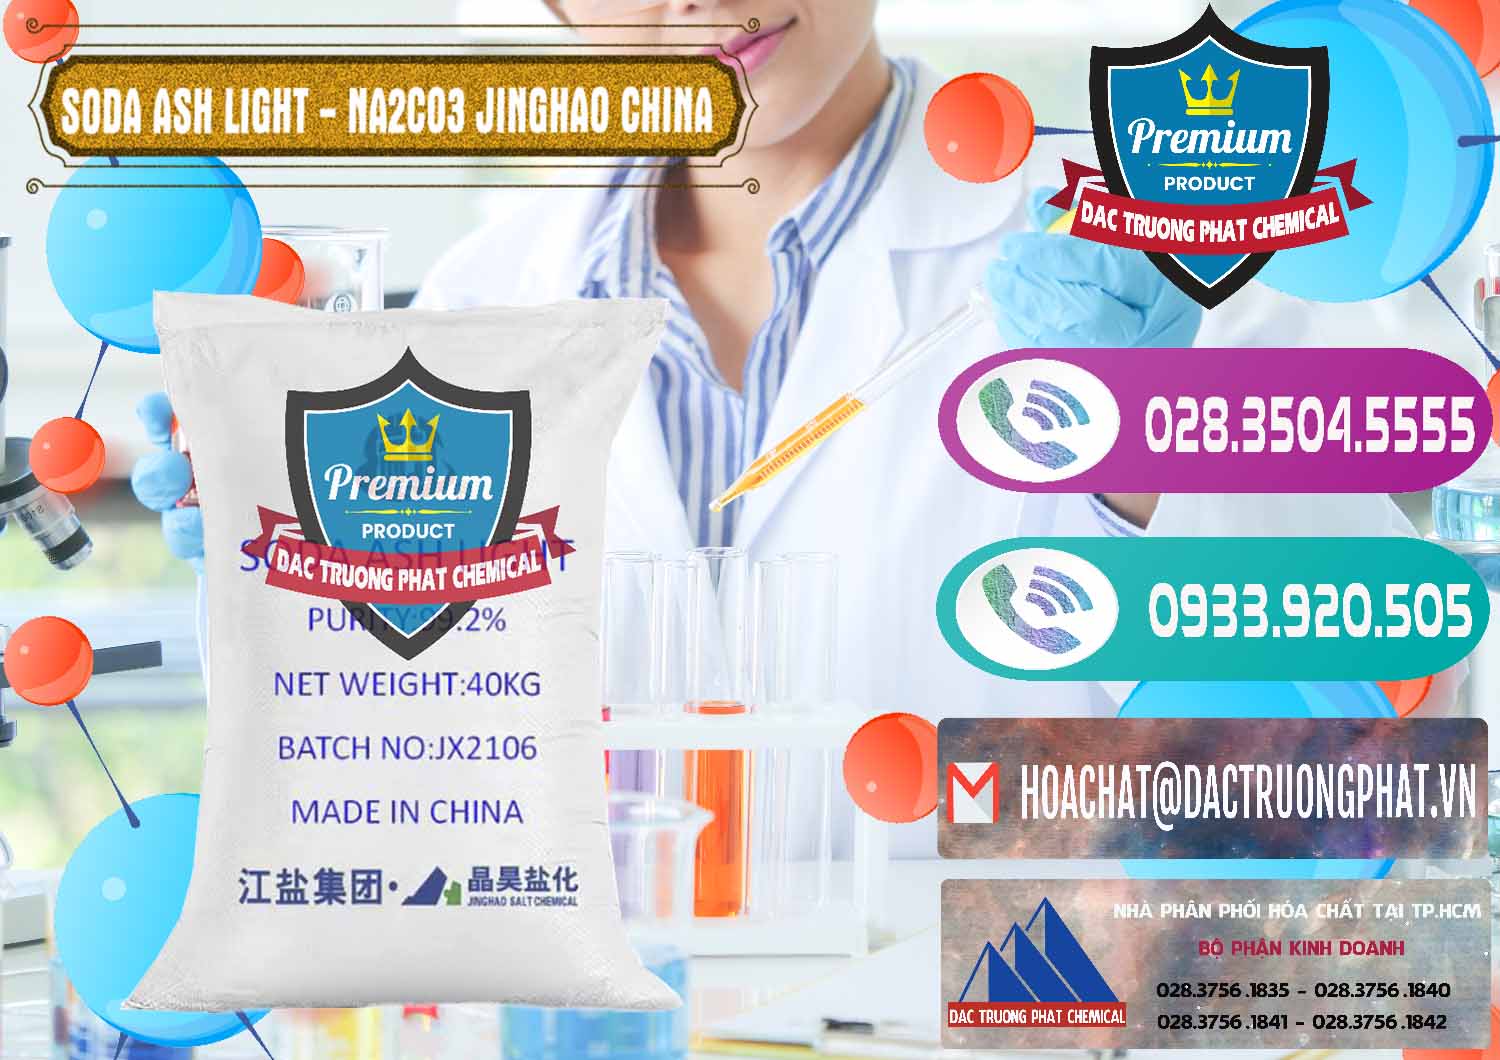 Nơi bán và phân phối Soda Ash Light - NA2CO3 Jinghao Trung Quốc China - 0339 - Đơn vị chuyên nhập khẩu - cung cấp hóa chất tại TP.HCM - hoachatxulynuoc.com